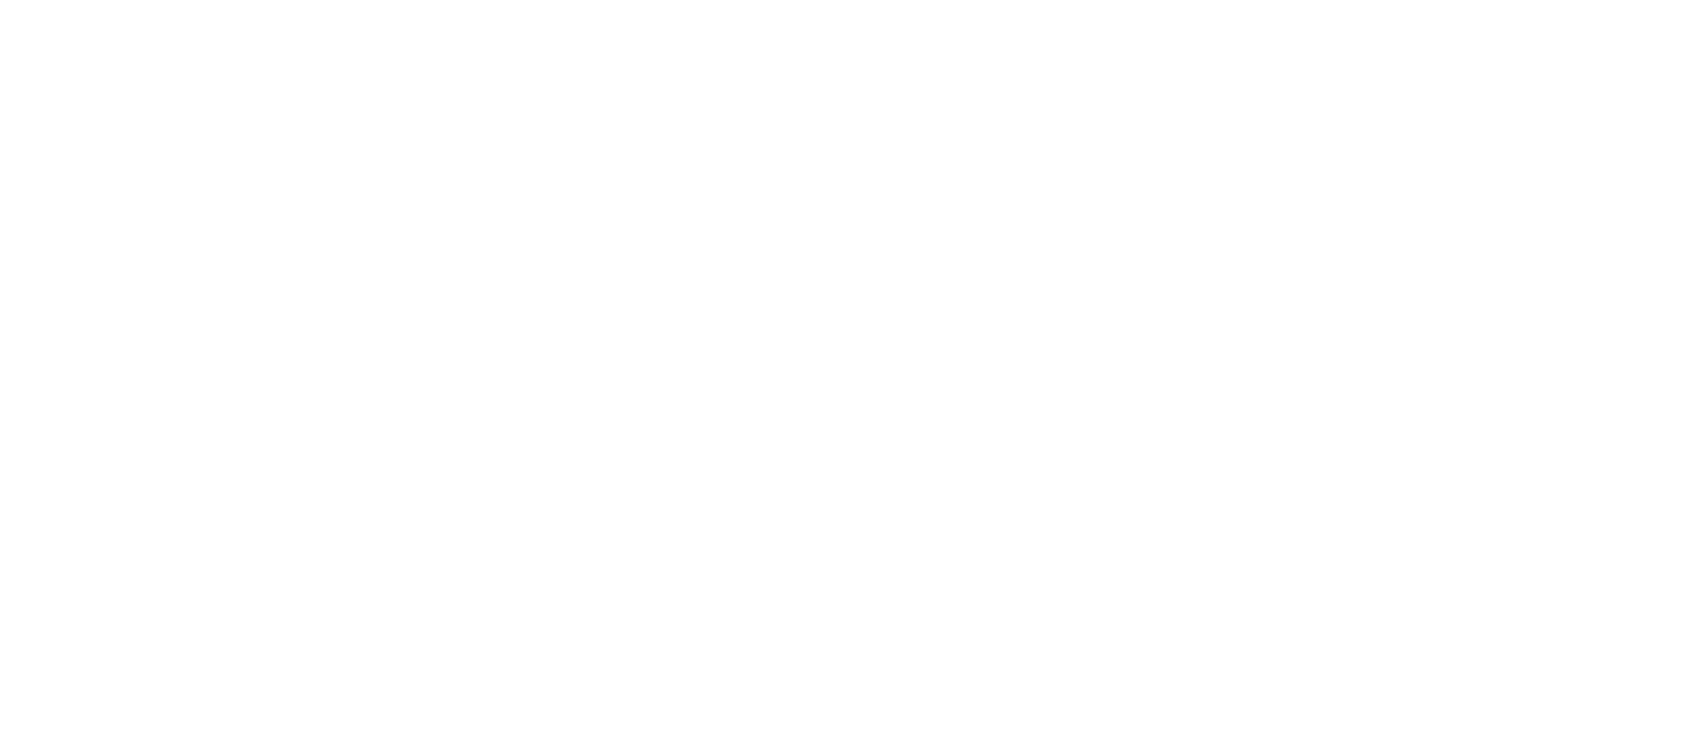 LostDetailsDecals